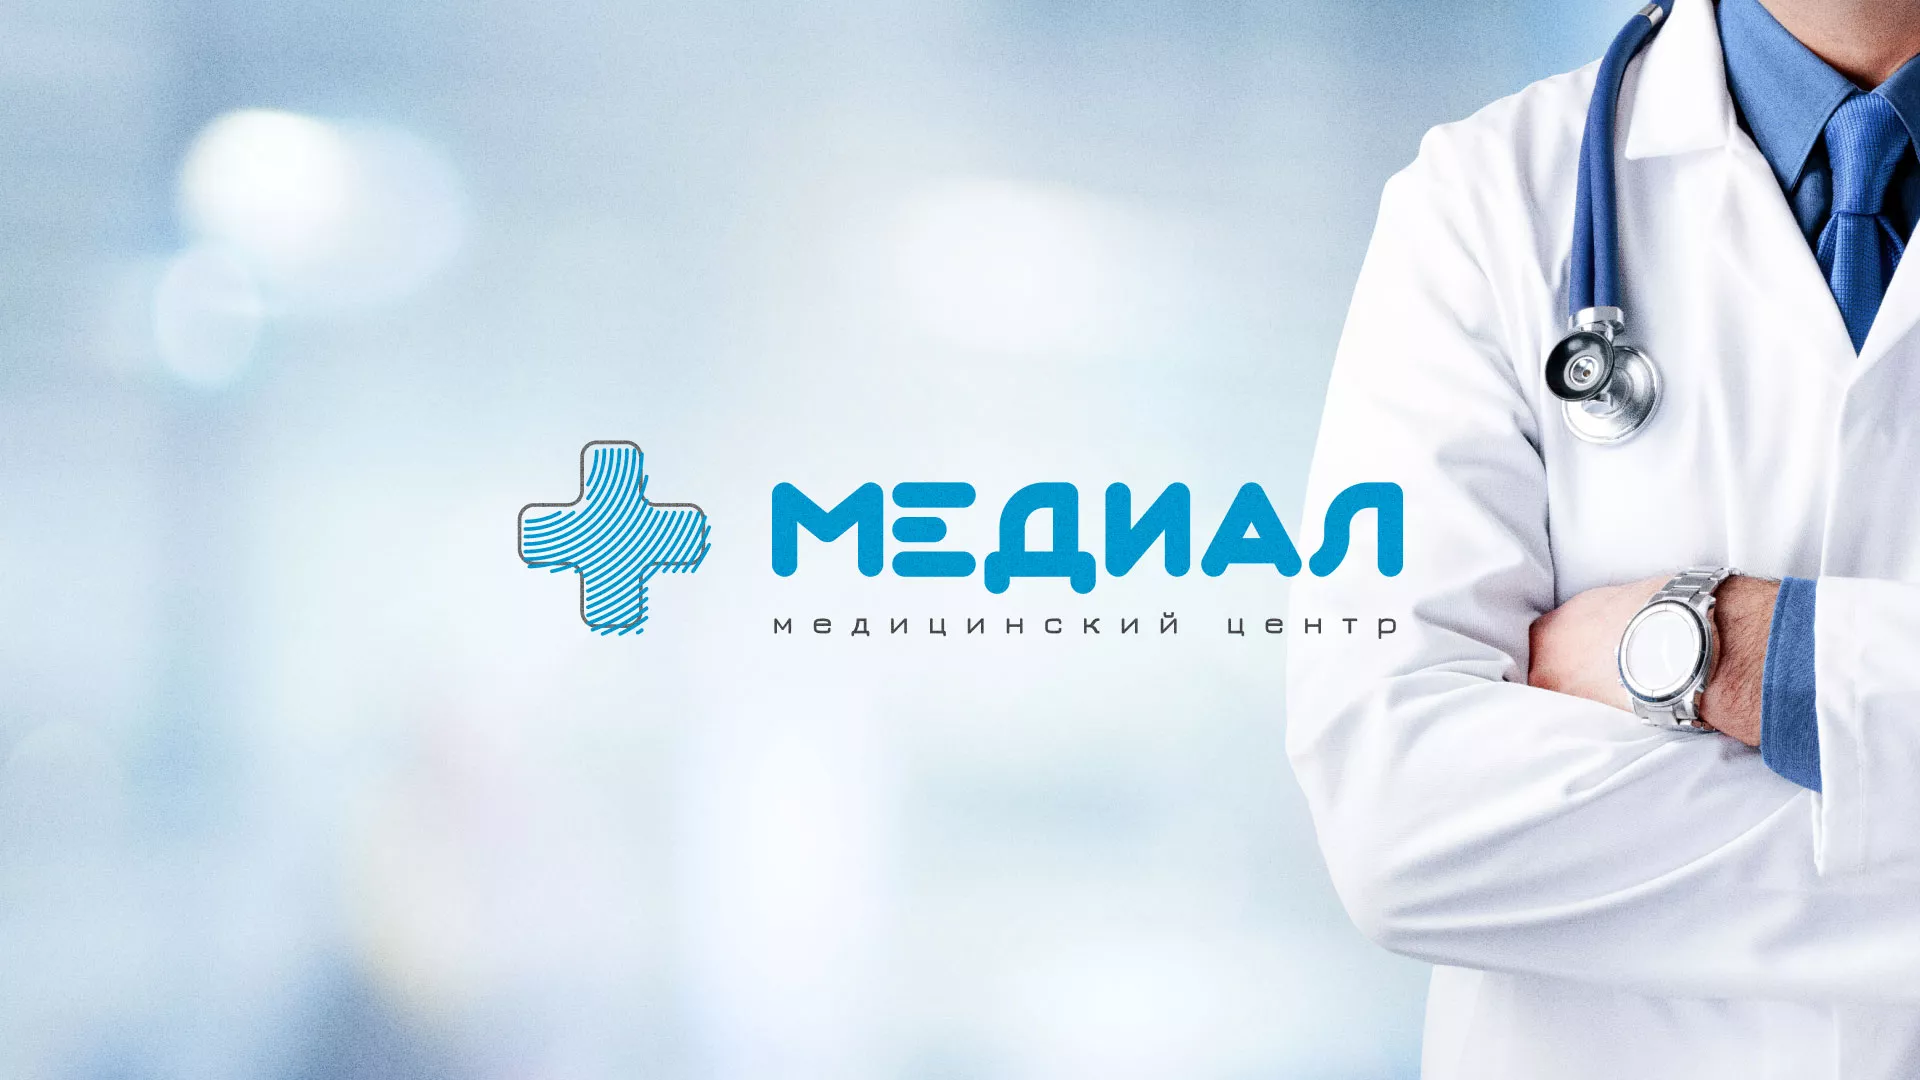 Создание сайта для медицинского центра «Медиал» в Александровске-Сахалинском